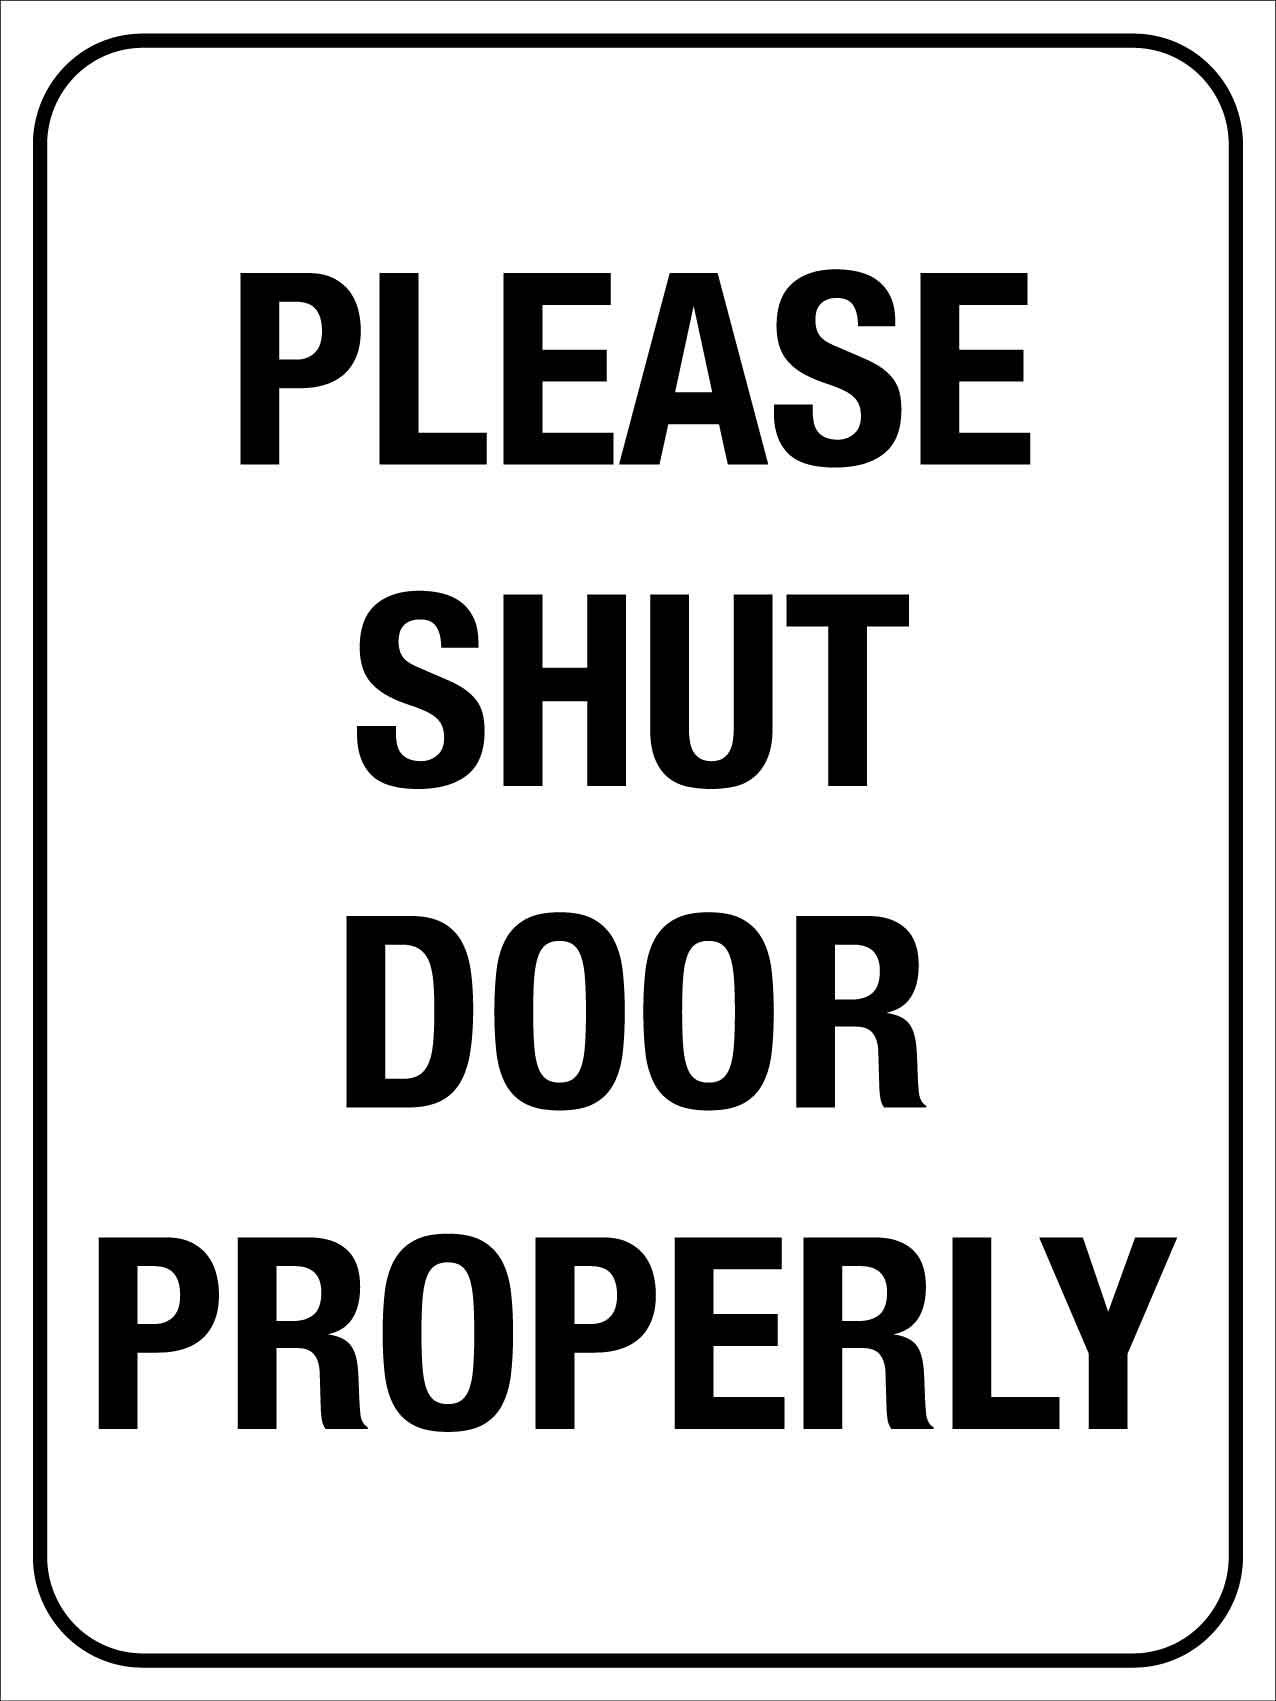 Please Shut Door Properly Sign